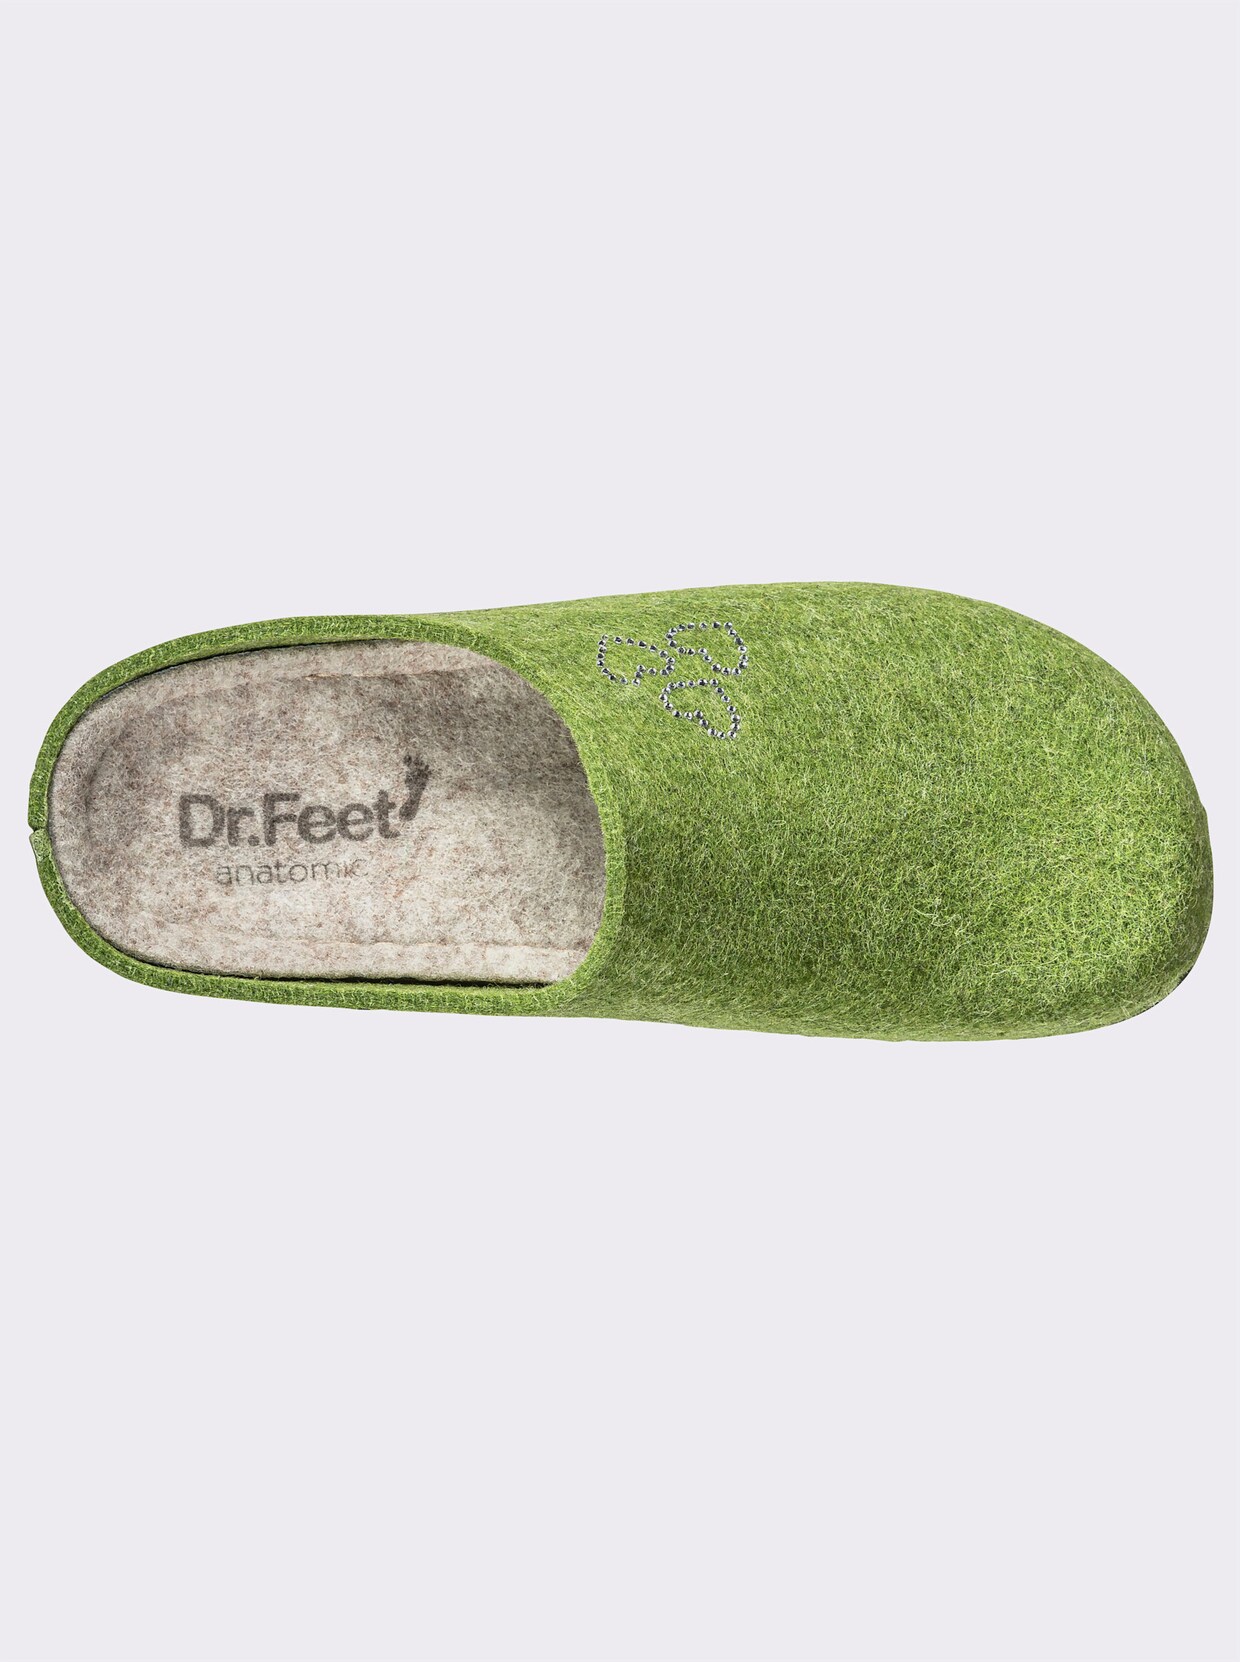 Dr. Feet Hausschuh - grün